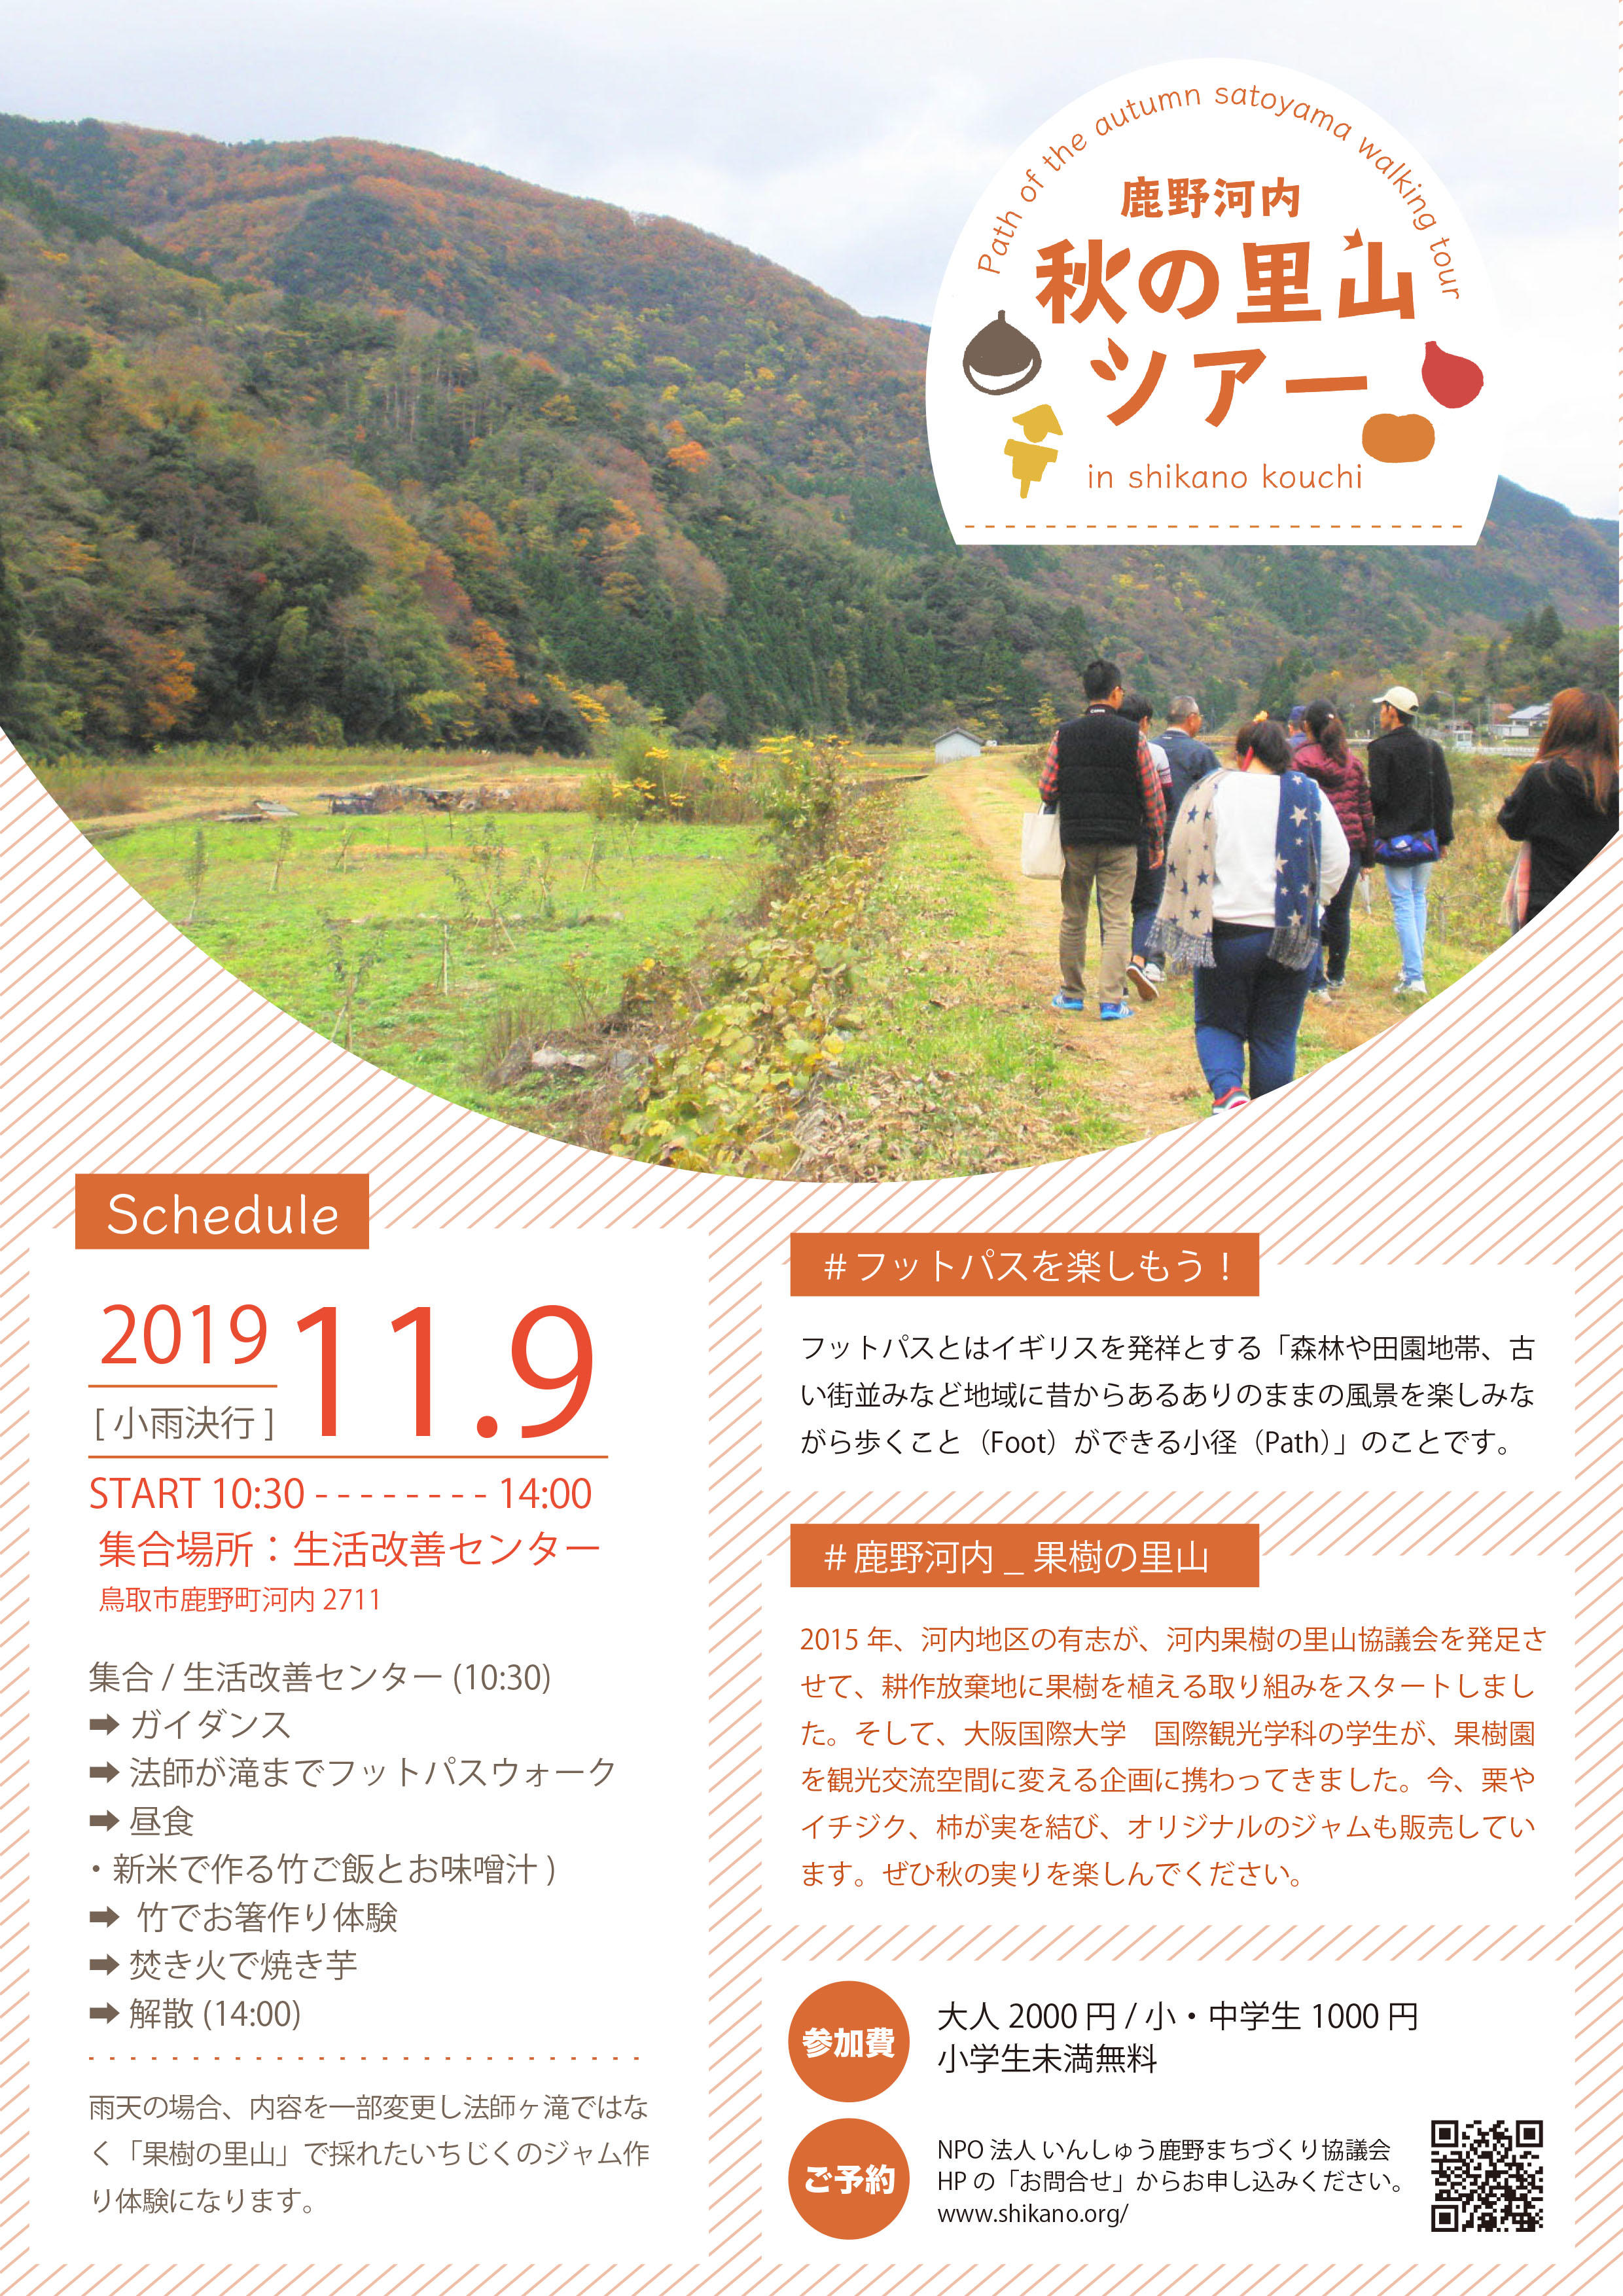 大阪国際大学の学生が鳥取県鹿野河内で「秋の里山ツアー」を実施